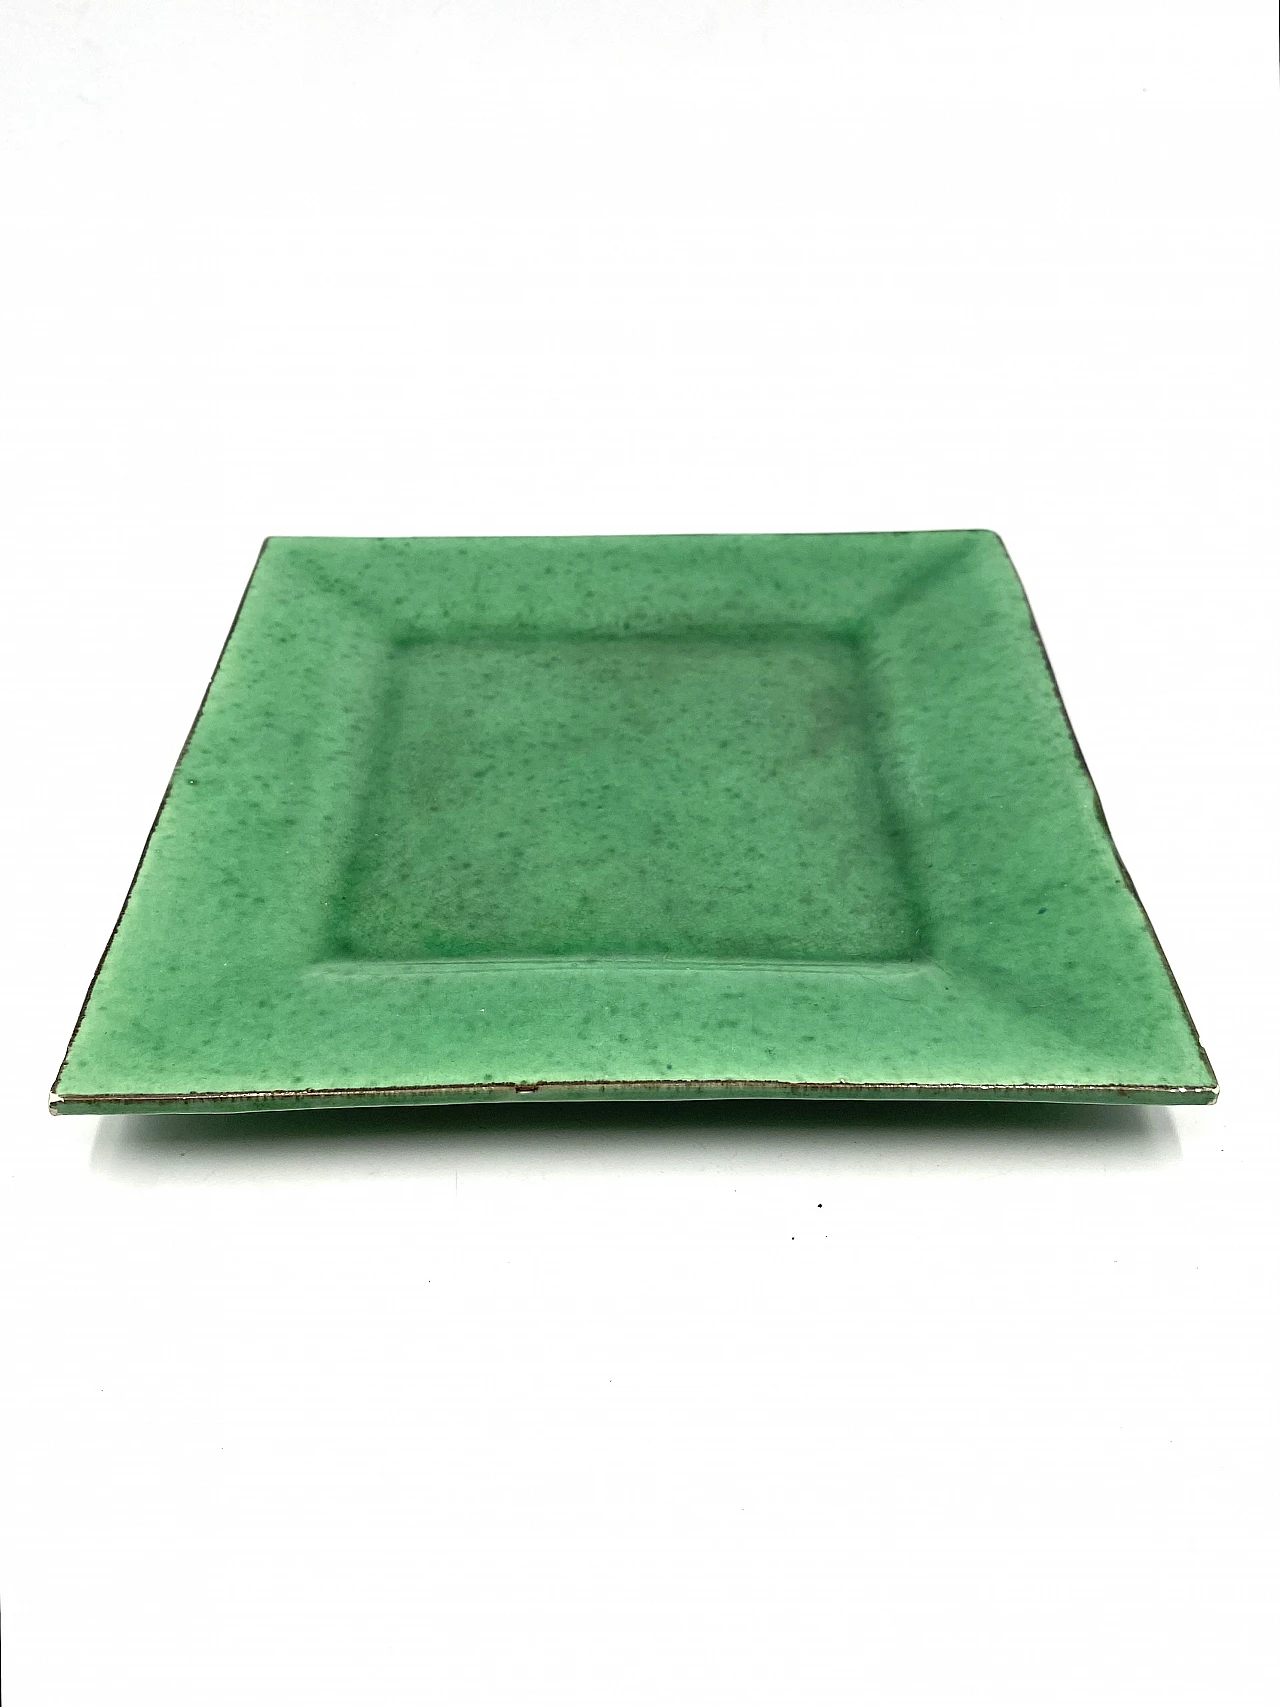 Vide poche in green glazed ceramic, 1960s 15